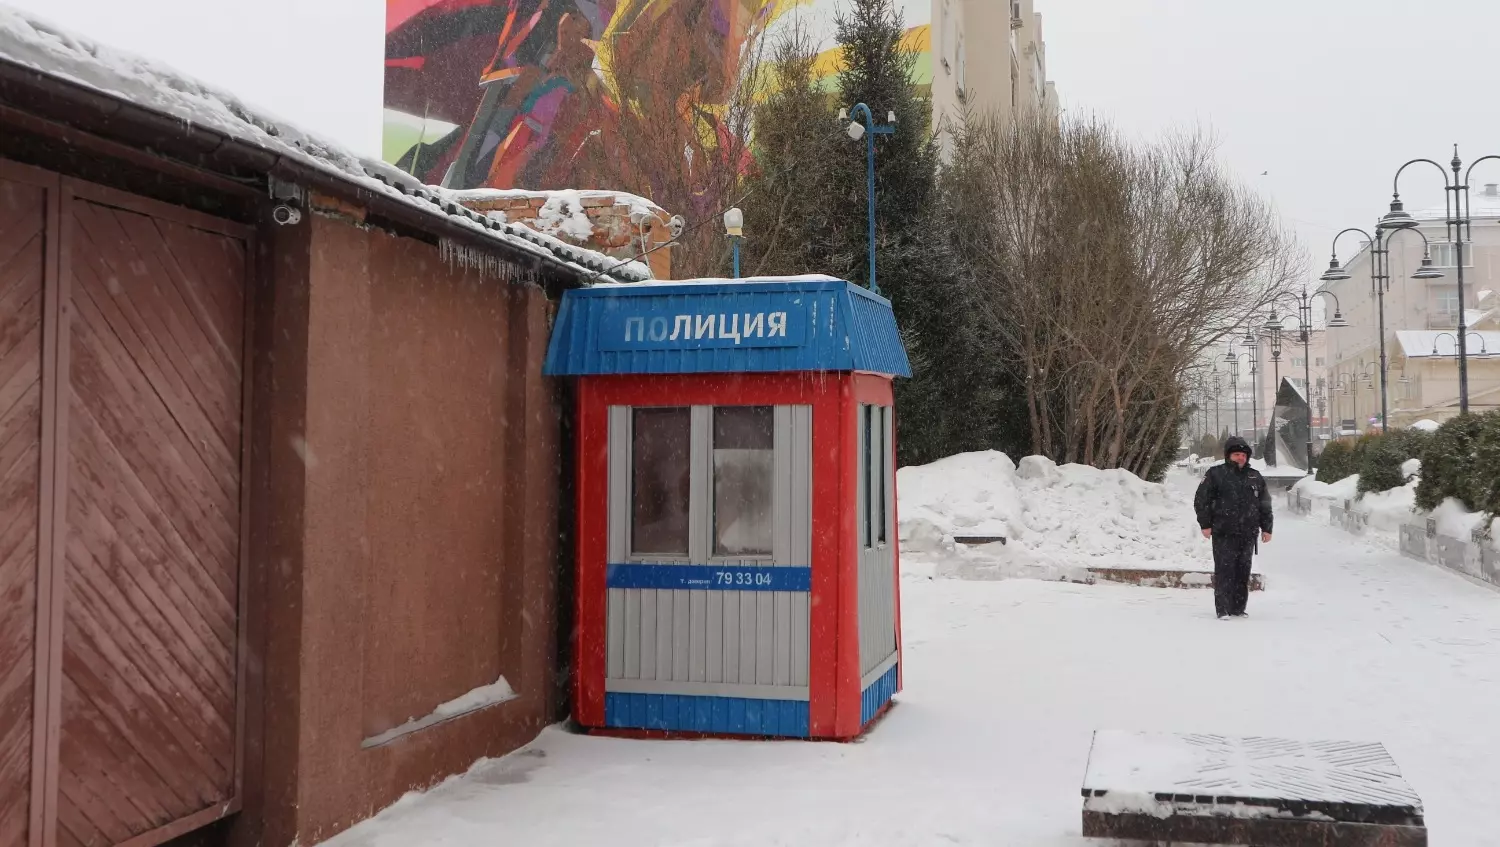 Полицейский пост на улице Чокана Валиханова стоит не одно десятилетие